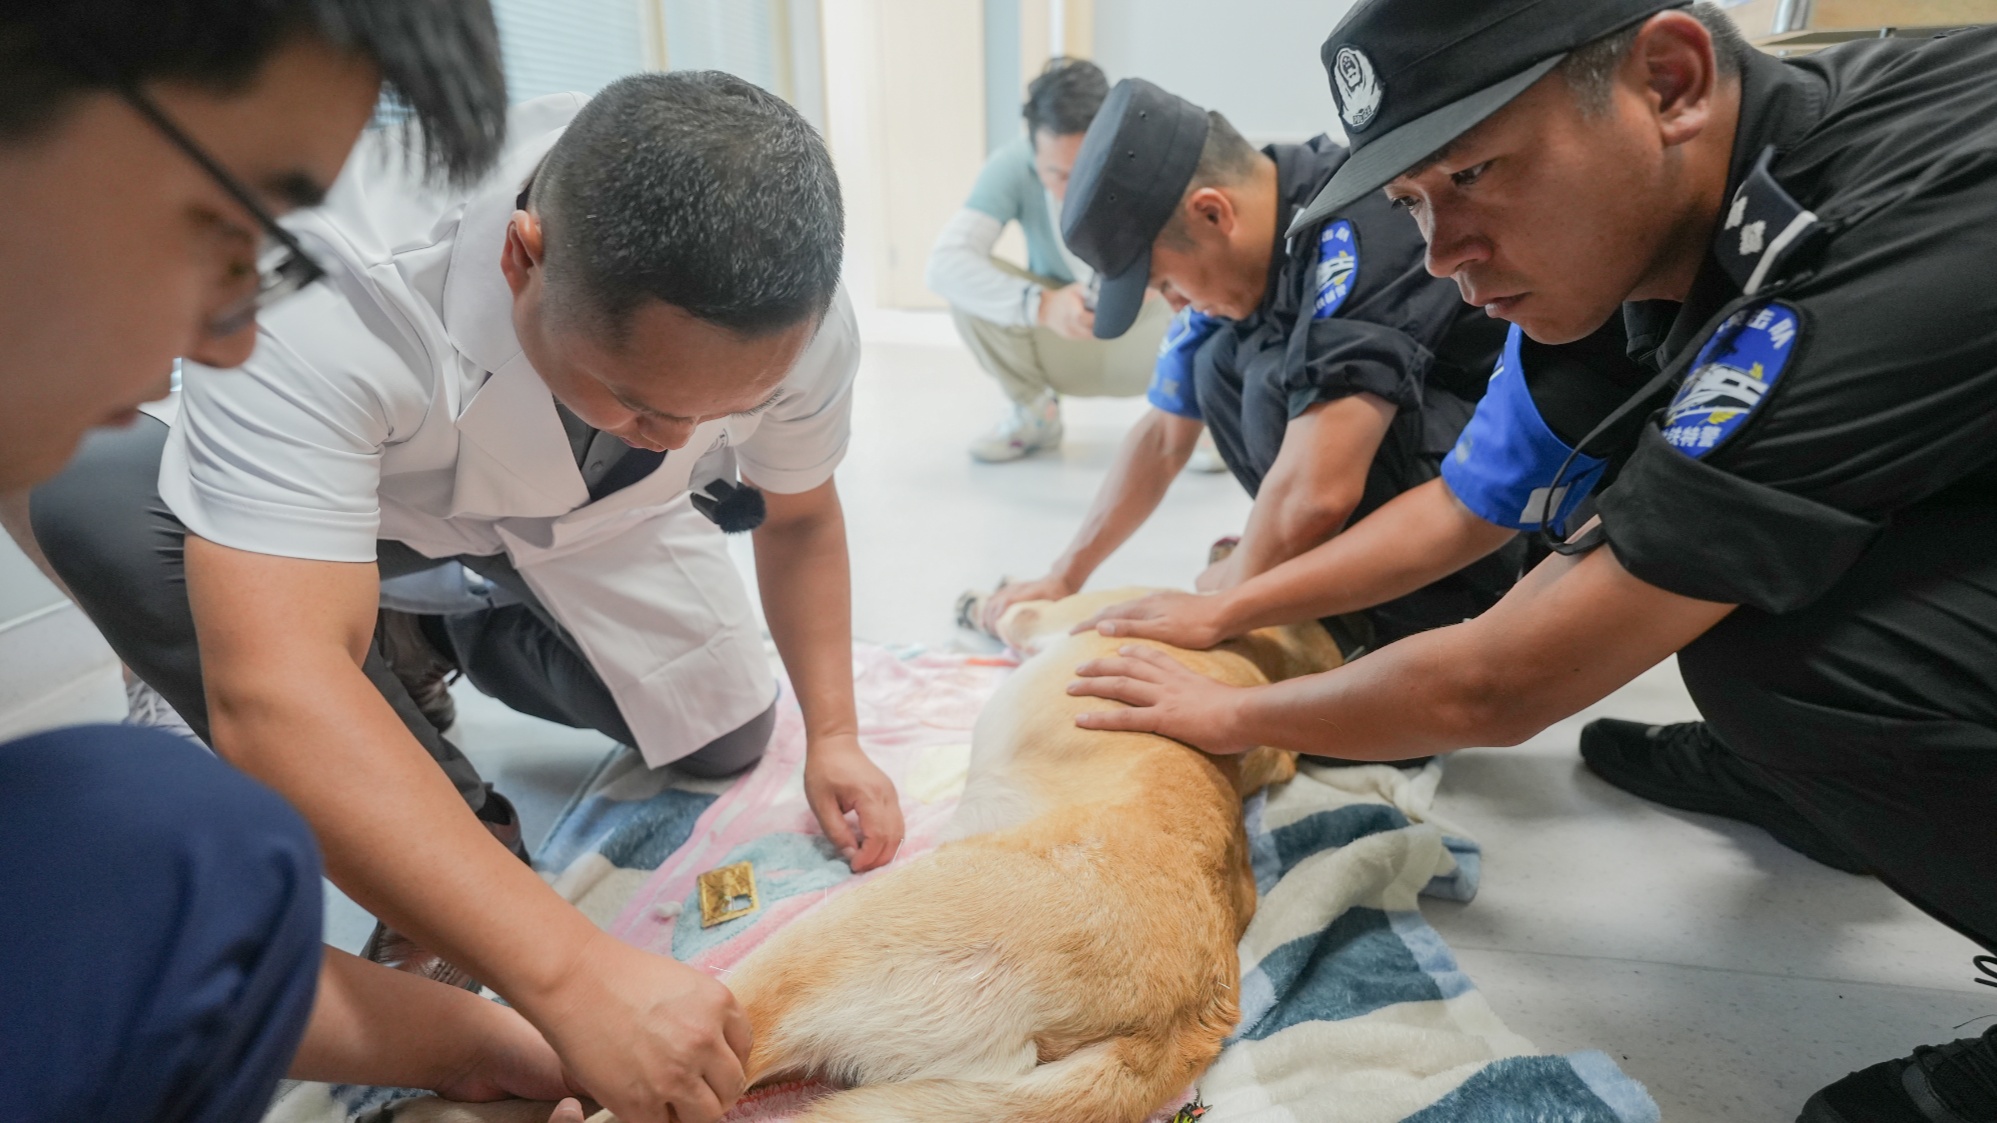 备战亚运安保 警犬在浙大高萌体检